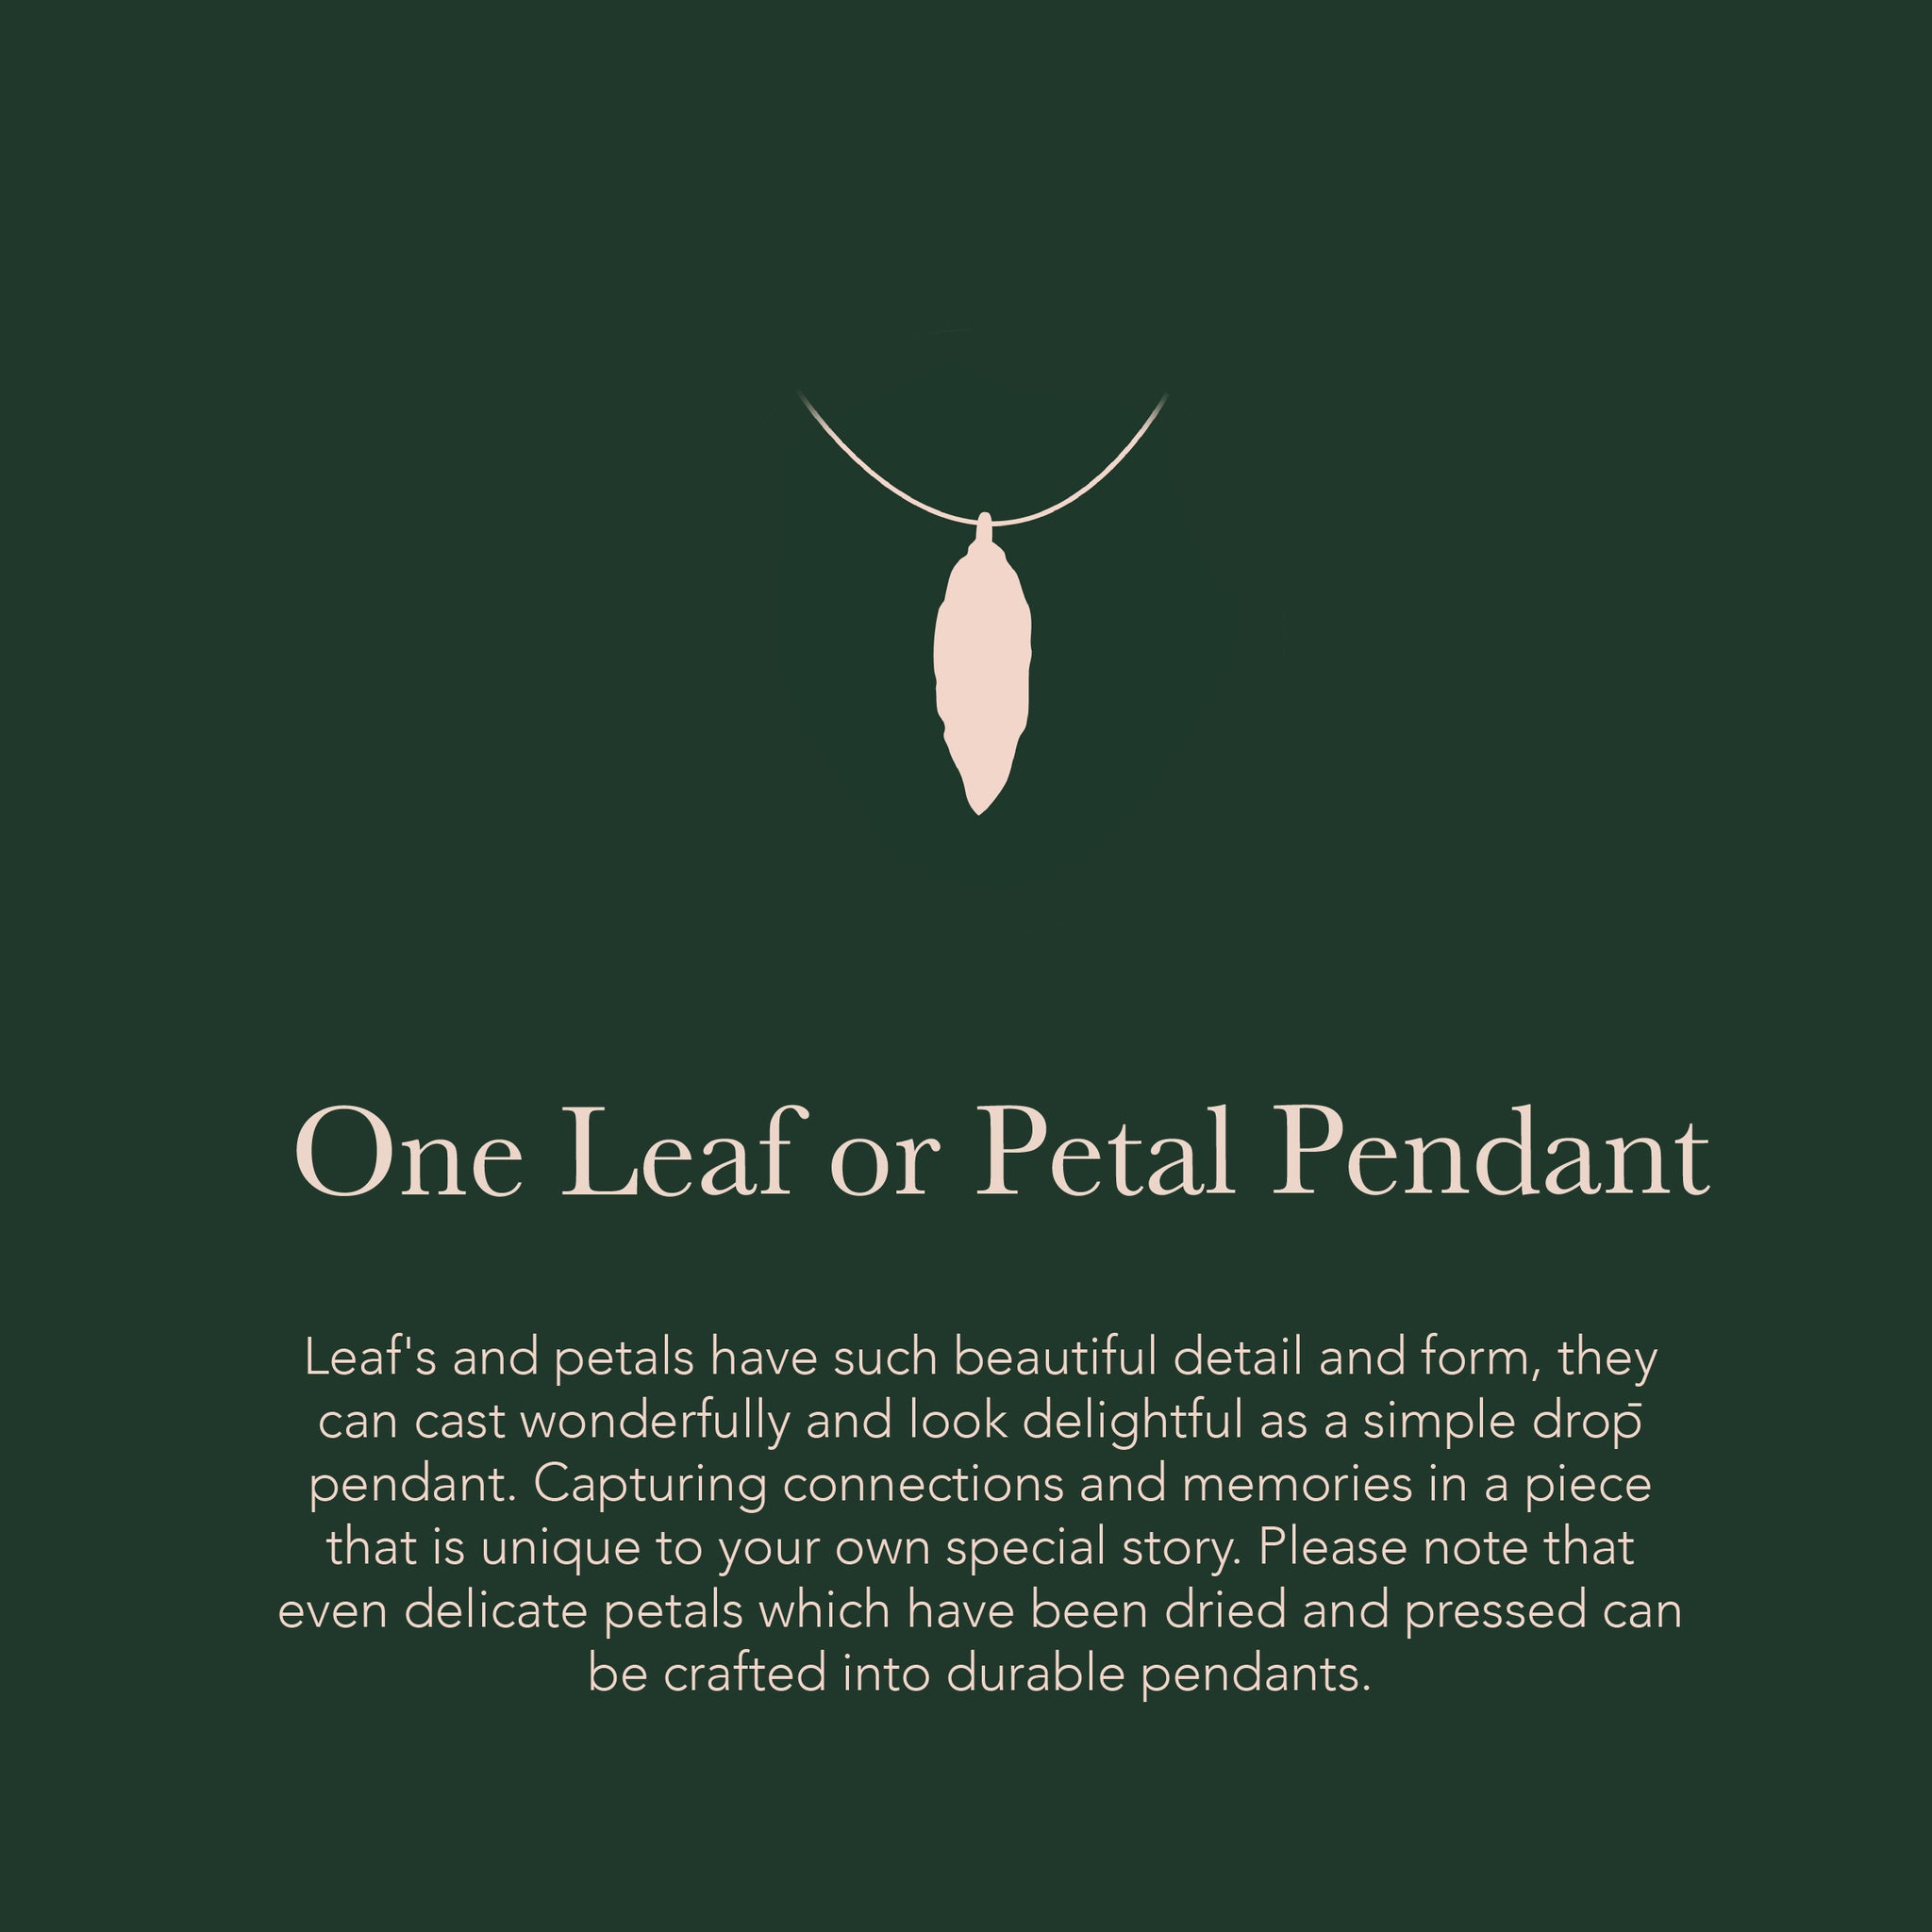 One Leaf or Petal Pendant - Create